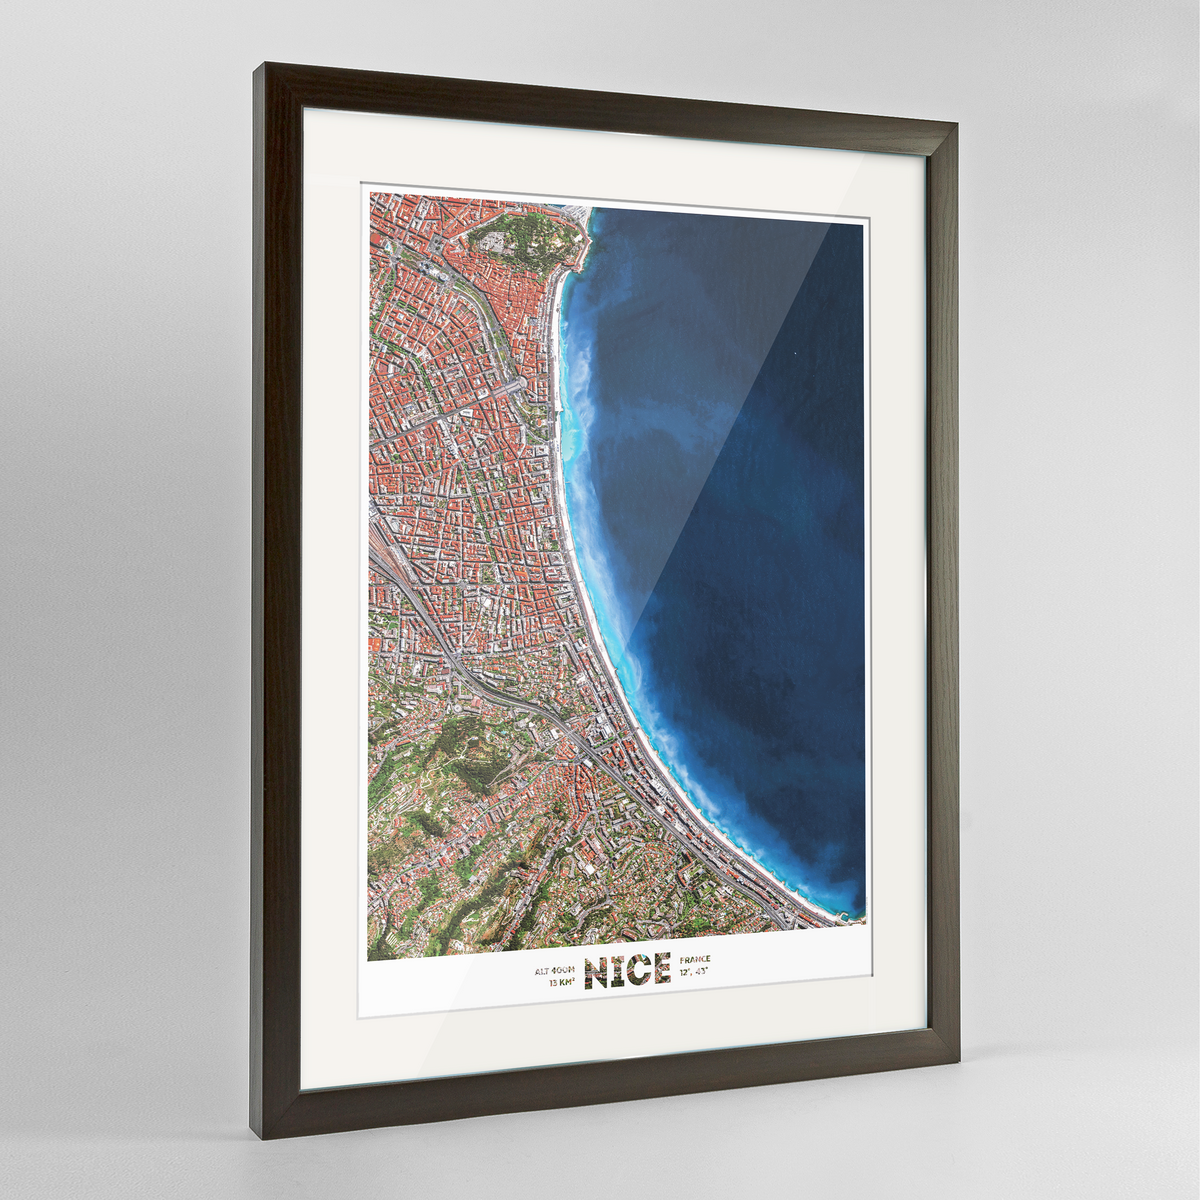 Nice Earth Photography Art Print - Framed